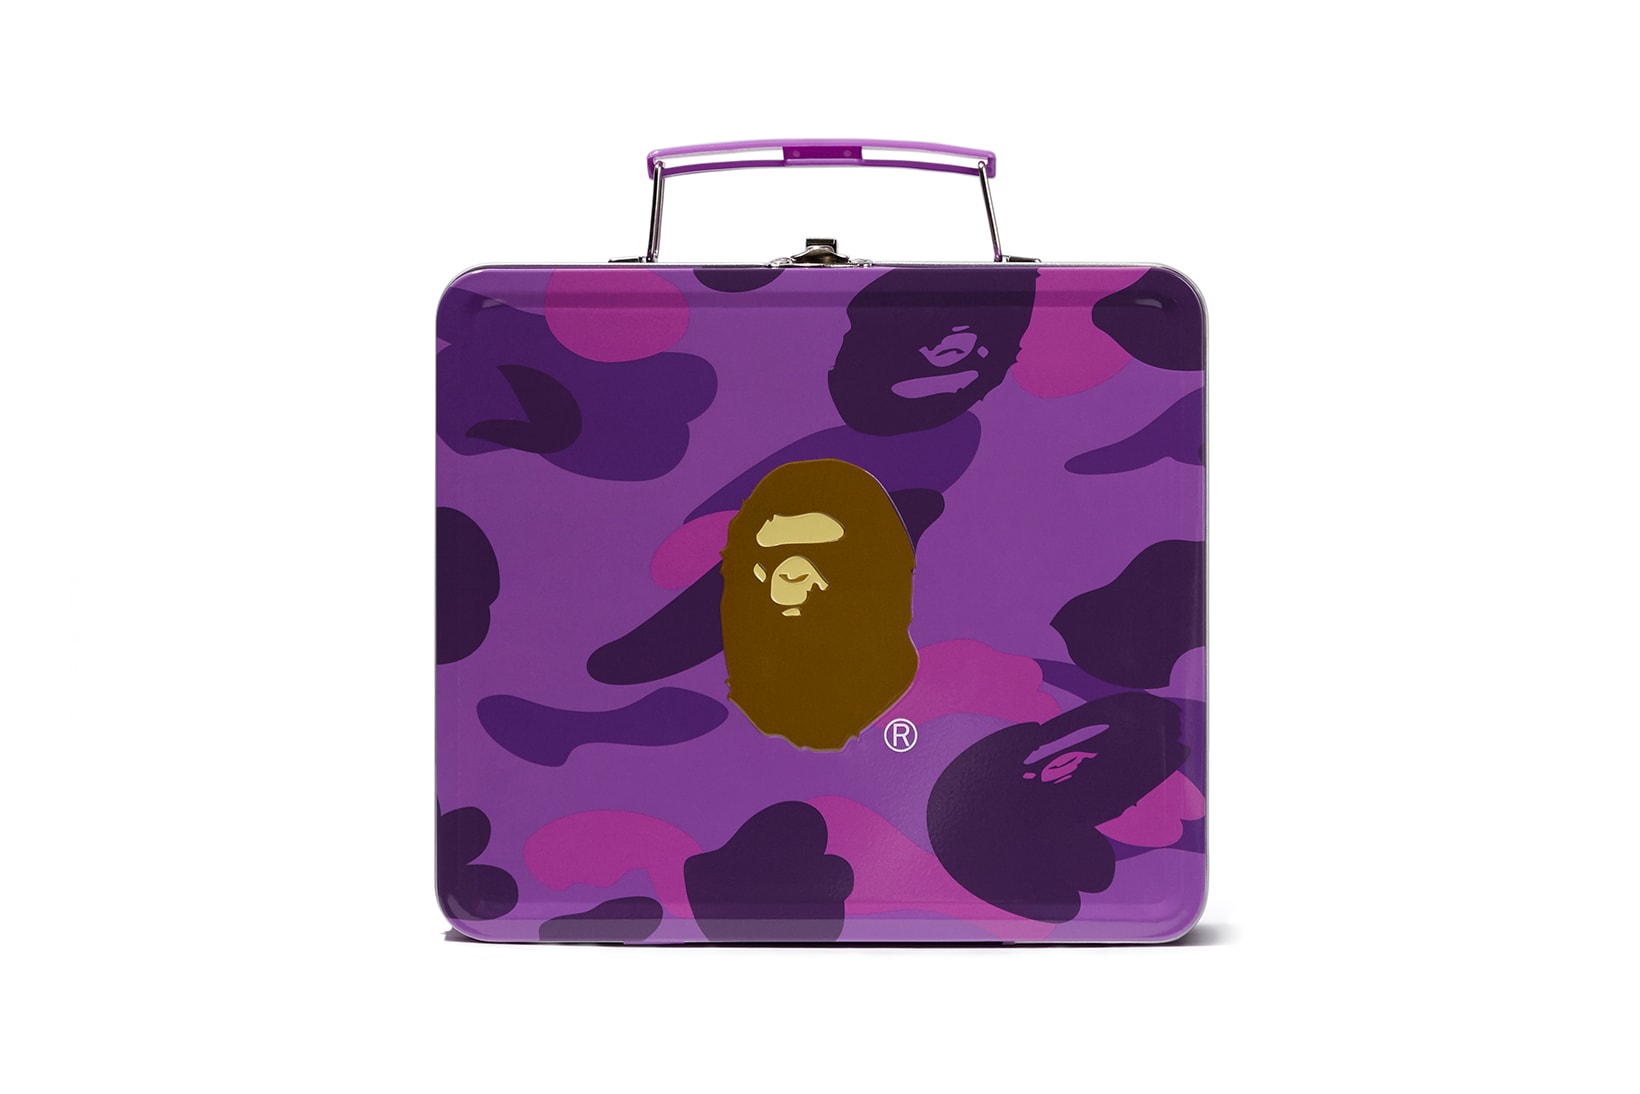 a bathing ape mooncakes gift box set purple camo mid autumn festival hong kong